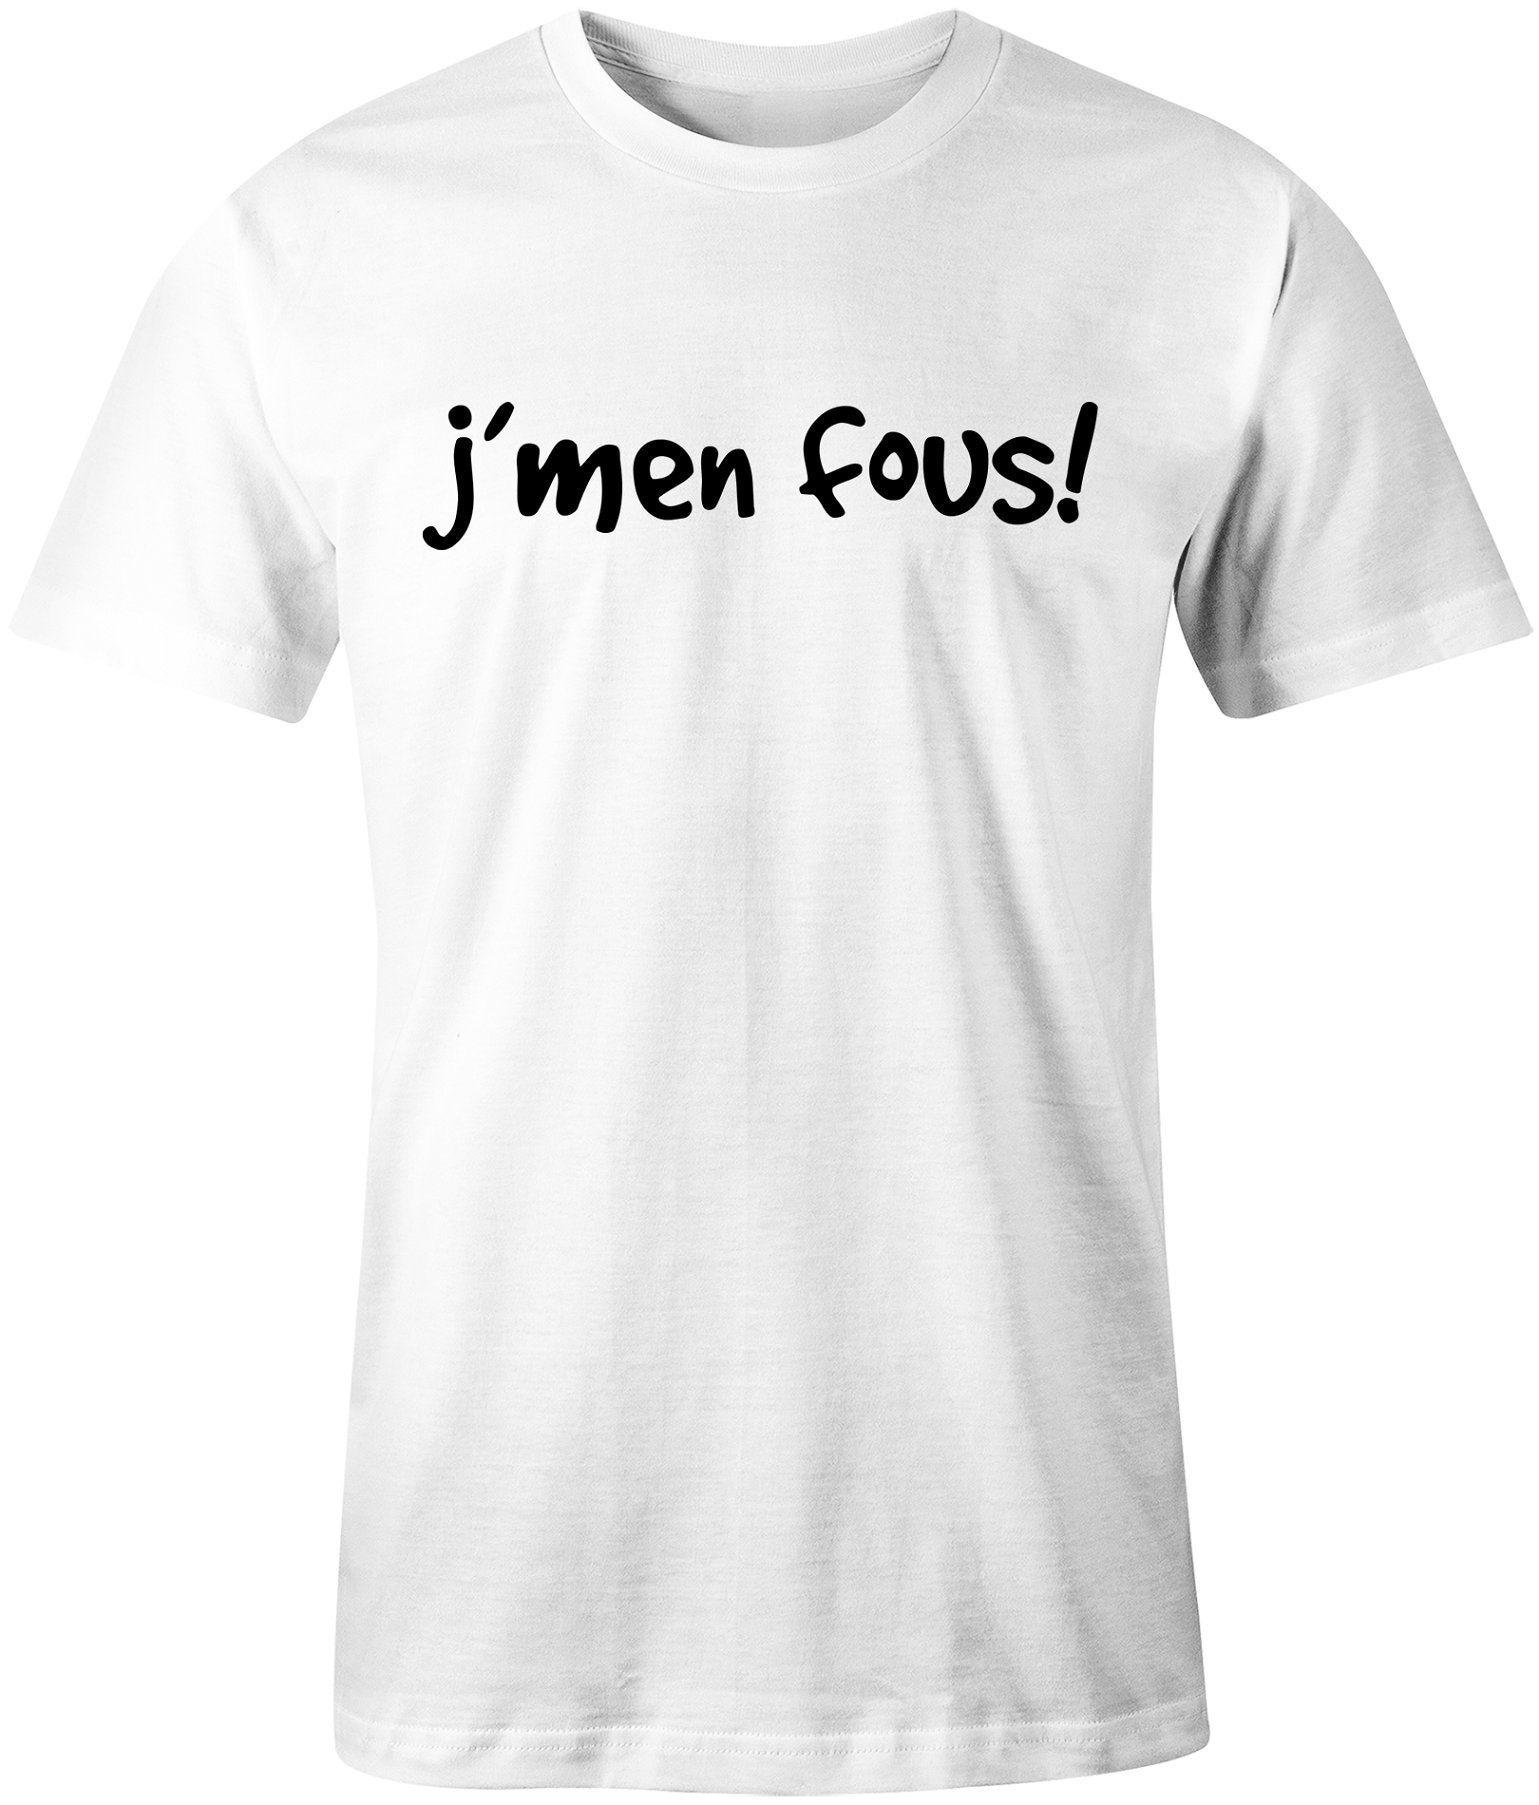 French Shirt J'men Fous Tshirt Francais Quebec Slogan - Etsy